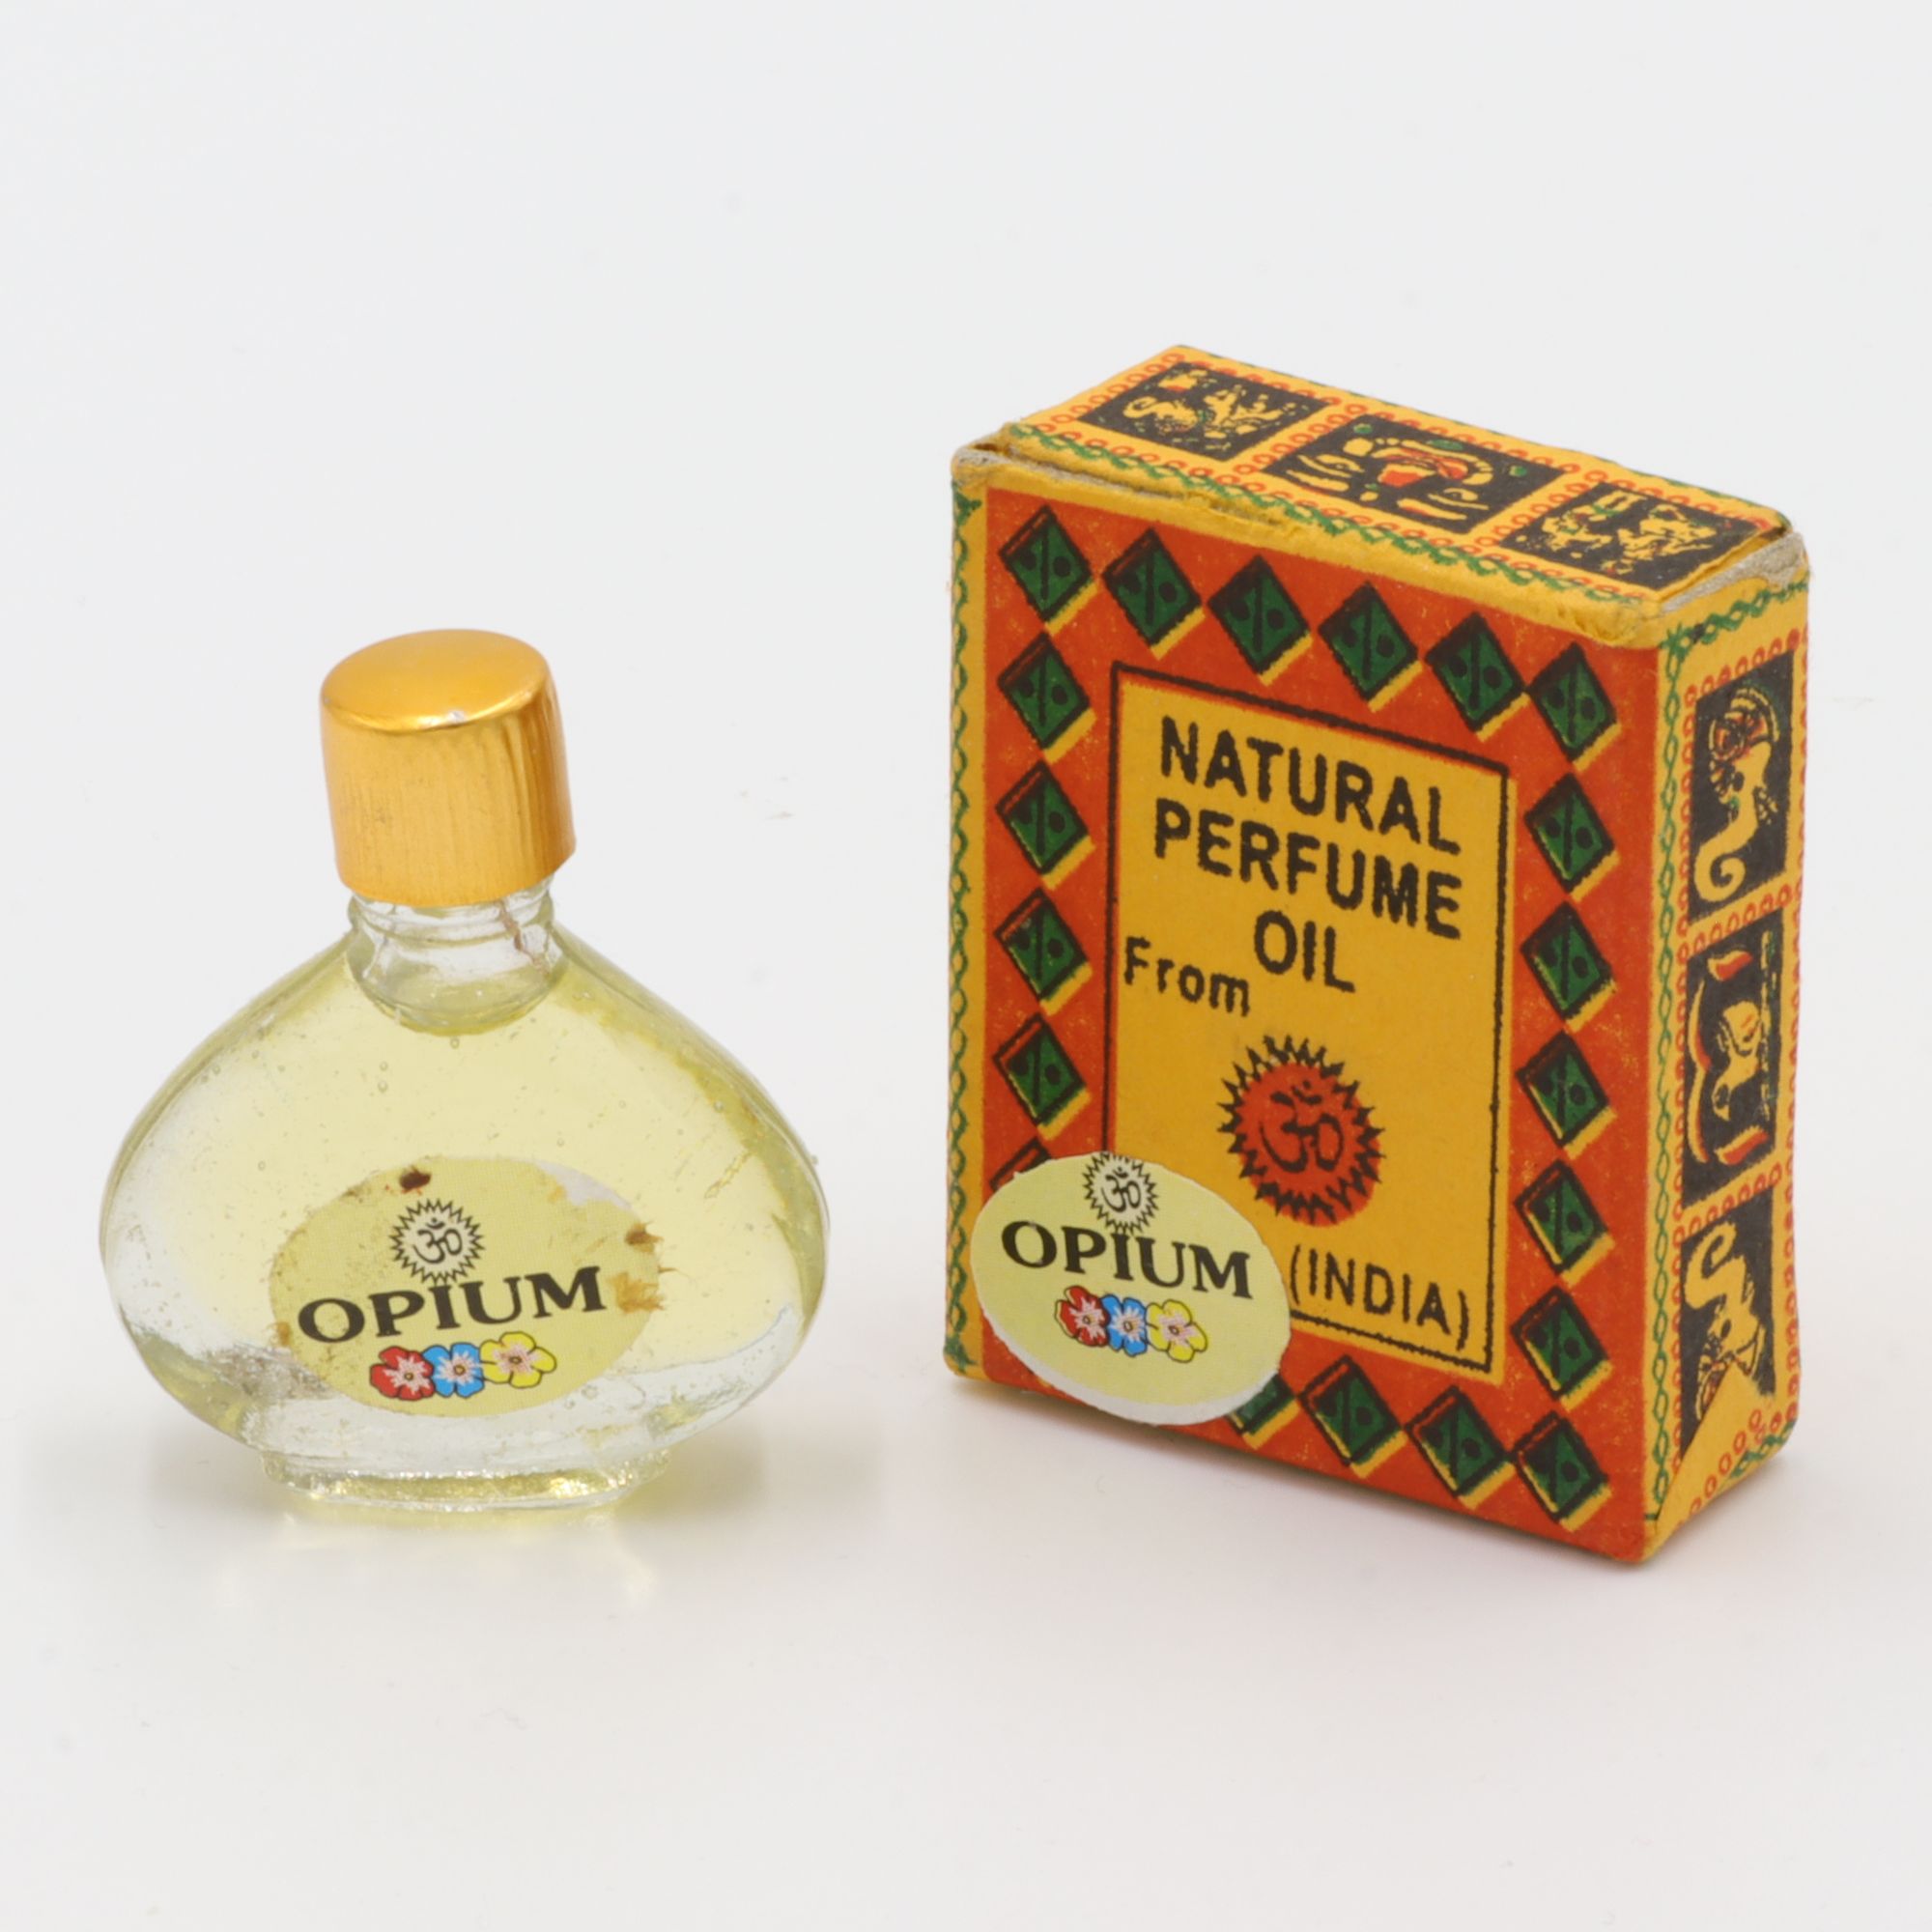 Natürliches Parfüm Öl - Om Expo - Opium - betörender Duft aus Indien - in süßem Flakon aus Glas